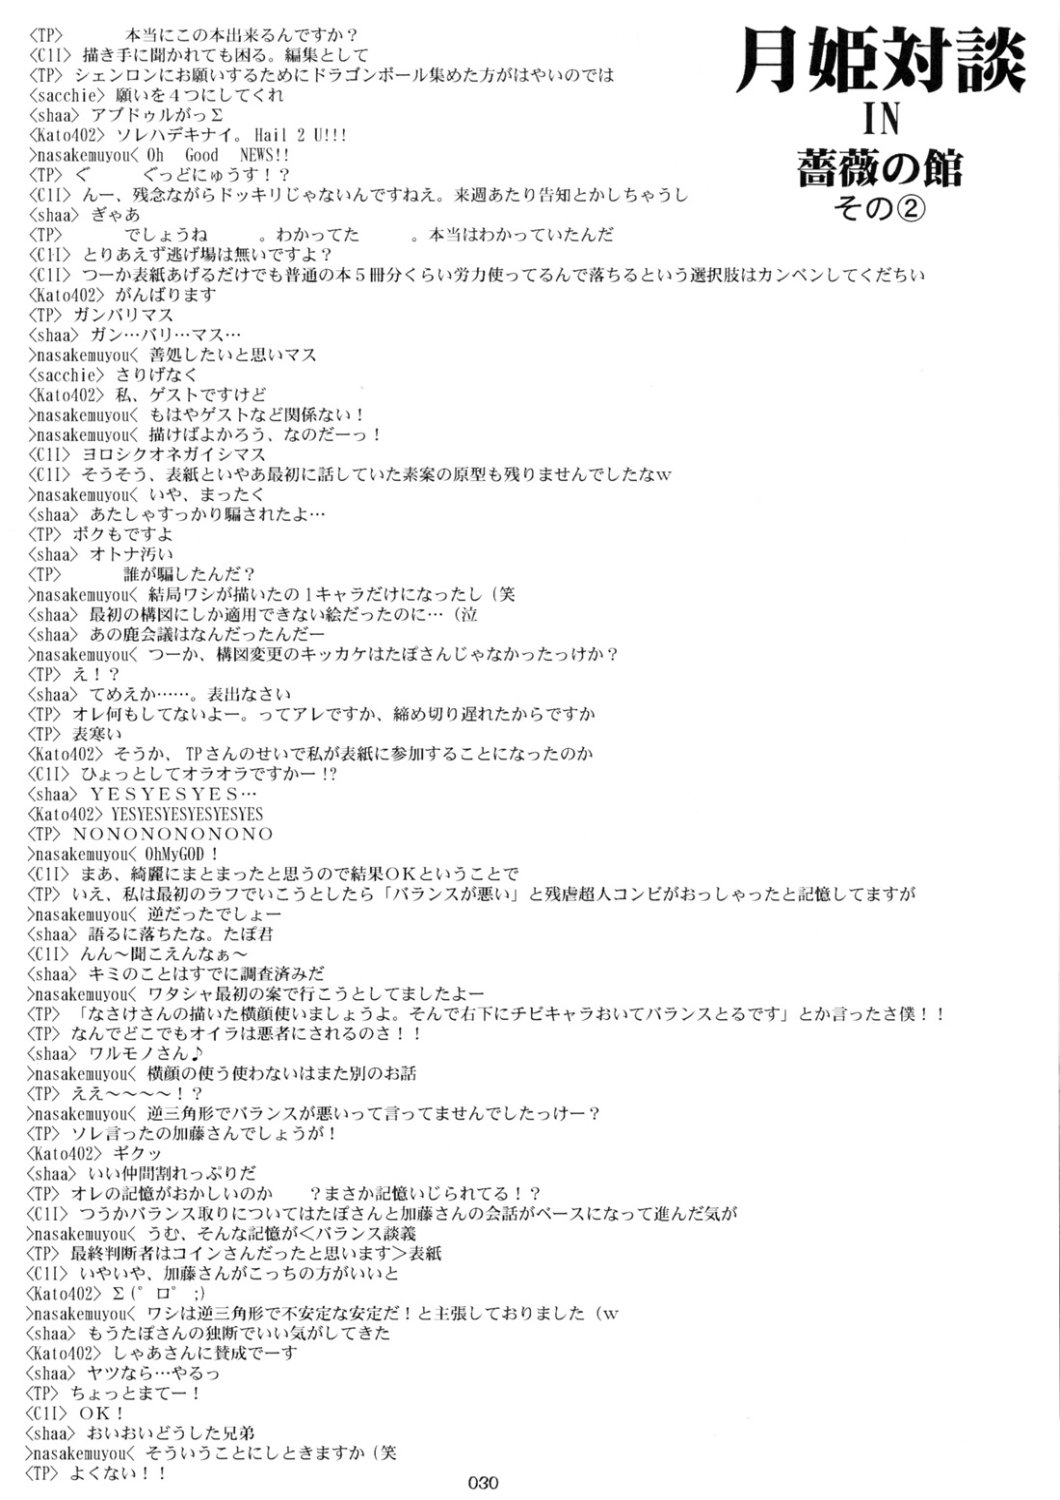 [Inochi no Furusato, Neko-bus Tei, Zangyaku Koui Teate] Akihamania [AKIHA MANIACS] (Tsukihime) page 29 full